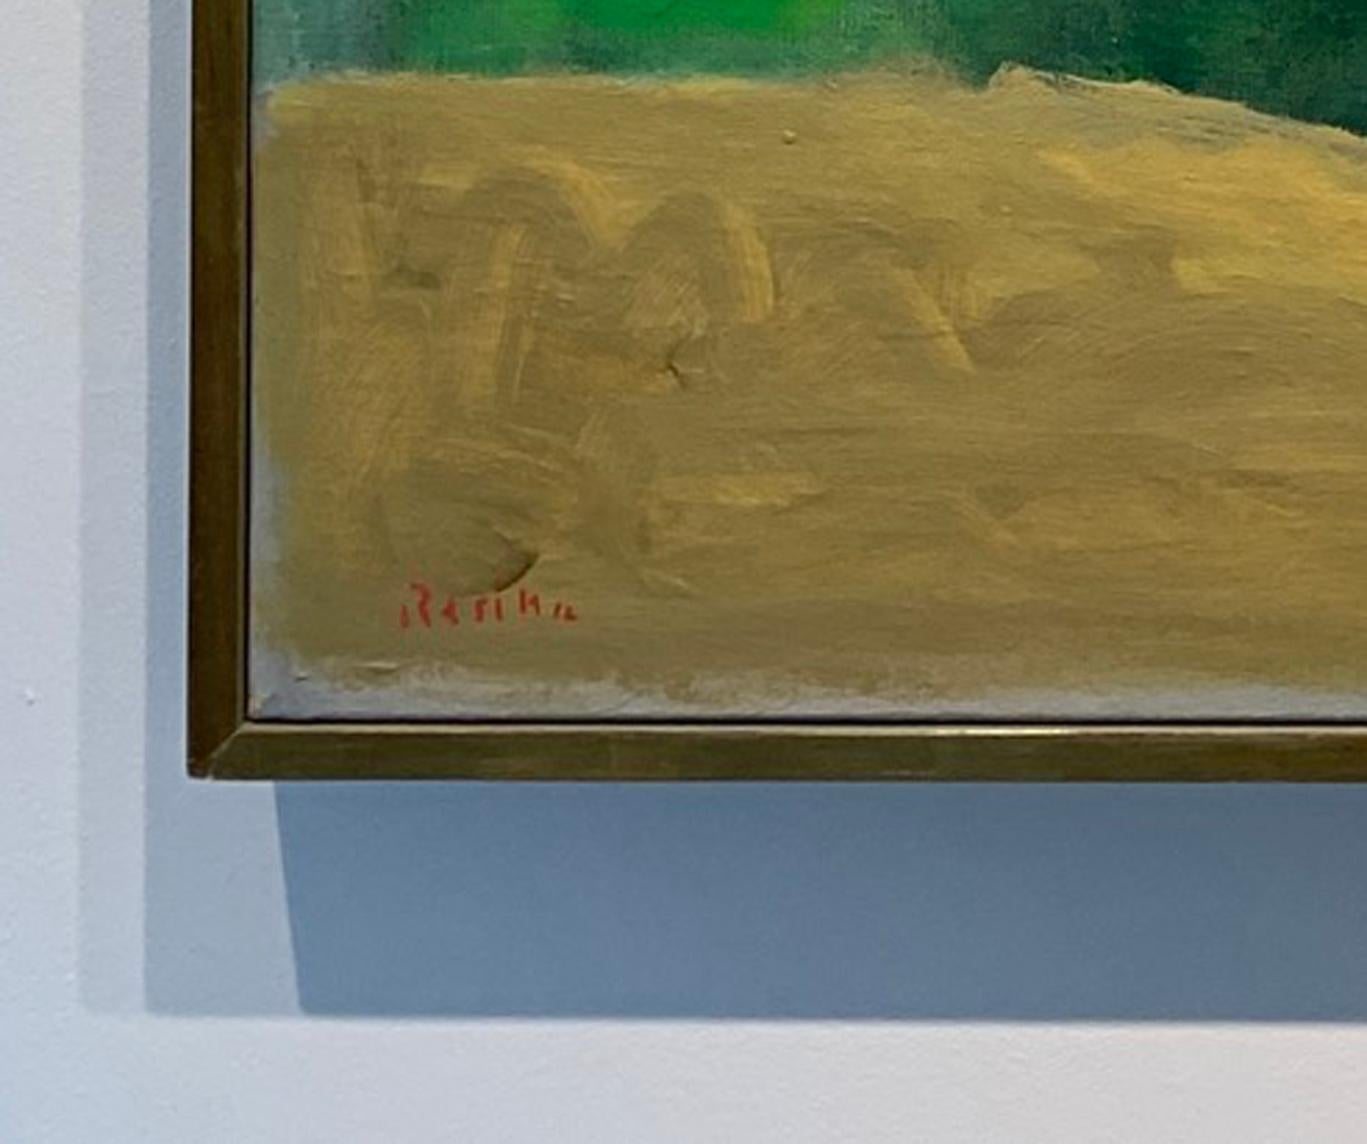 Paul Resika est né à New York en 1928. Il commence à prendre des cours de peinture à l'âge de neuf ans, fortement encouragé par sa mère émigrée russe. À l'âge de douze ans, il commence à étudier avec Sol Wilson. Pendant son adolescence, il a étudié